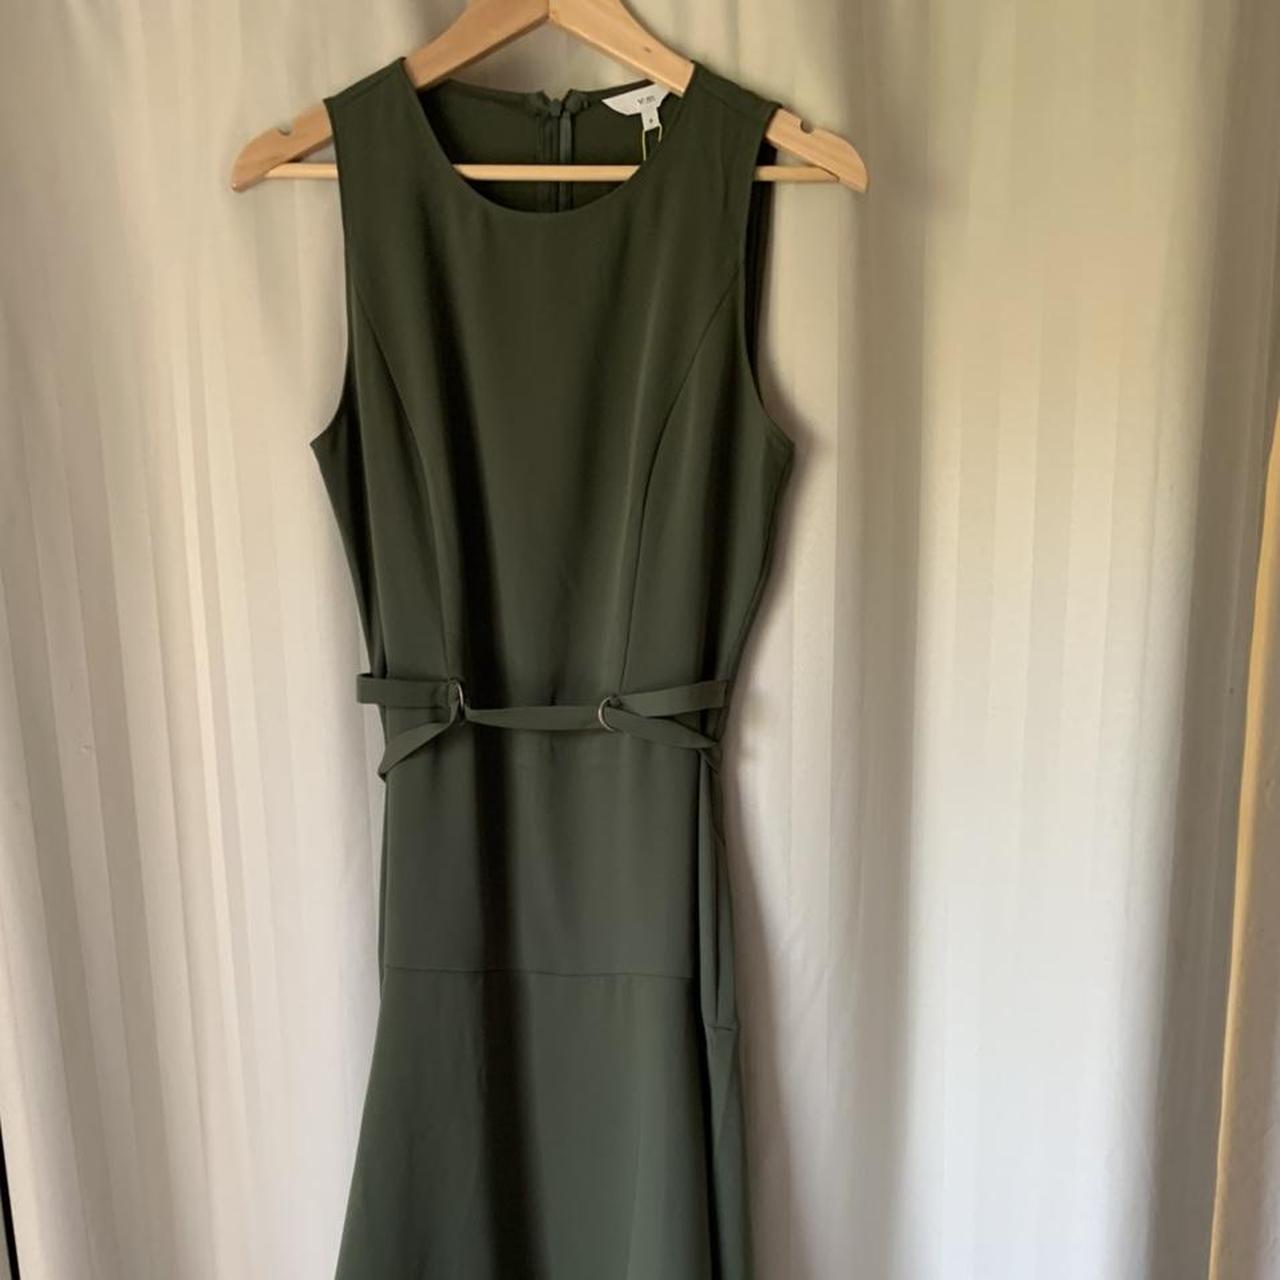 Veronika Maine Olive Green dress, size 8. Olive... - Depop